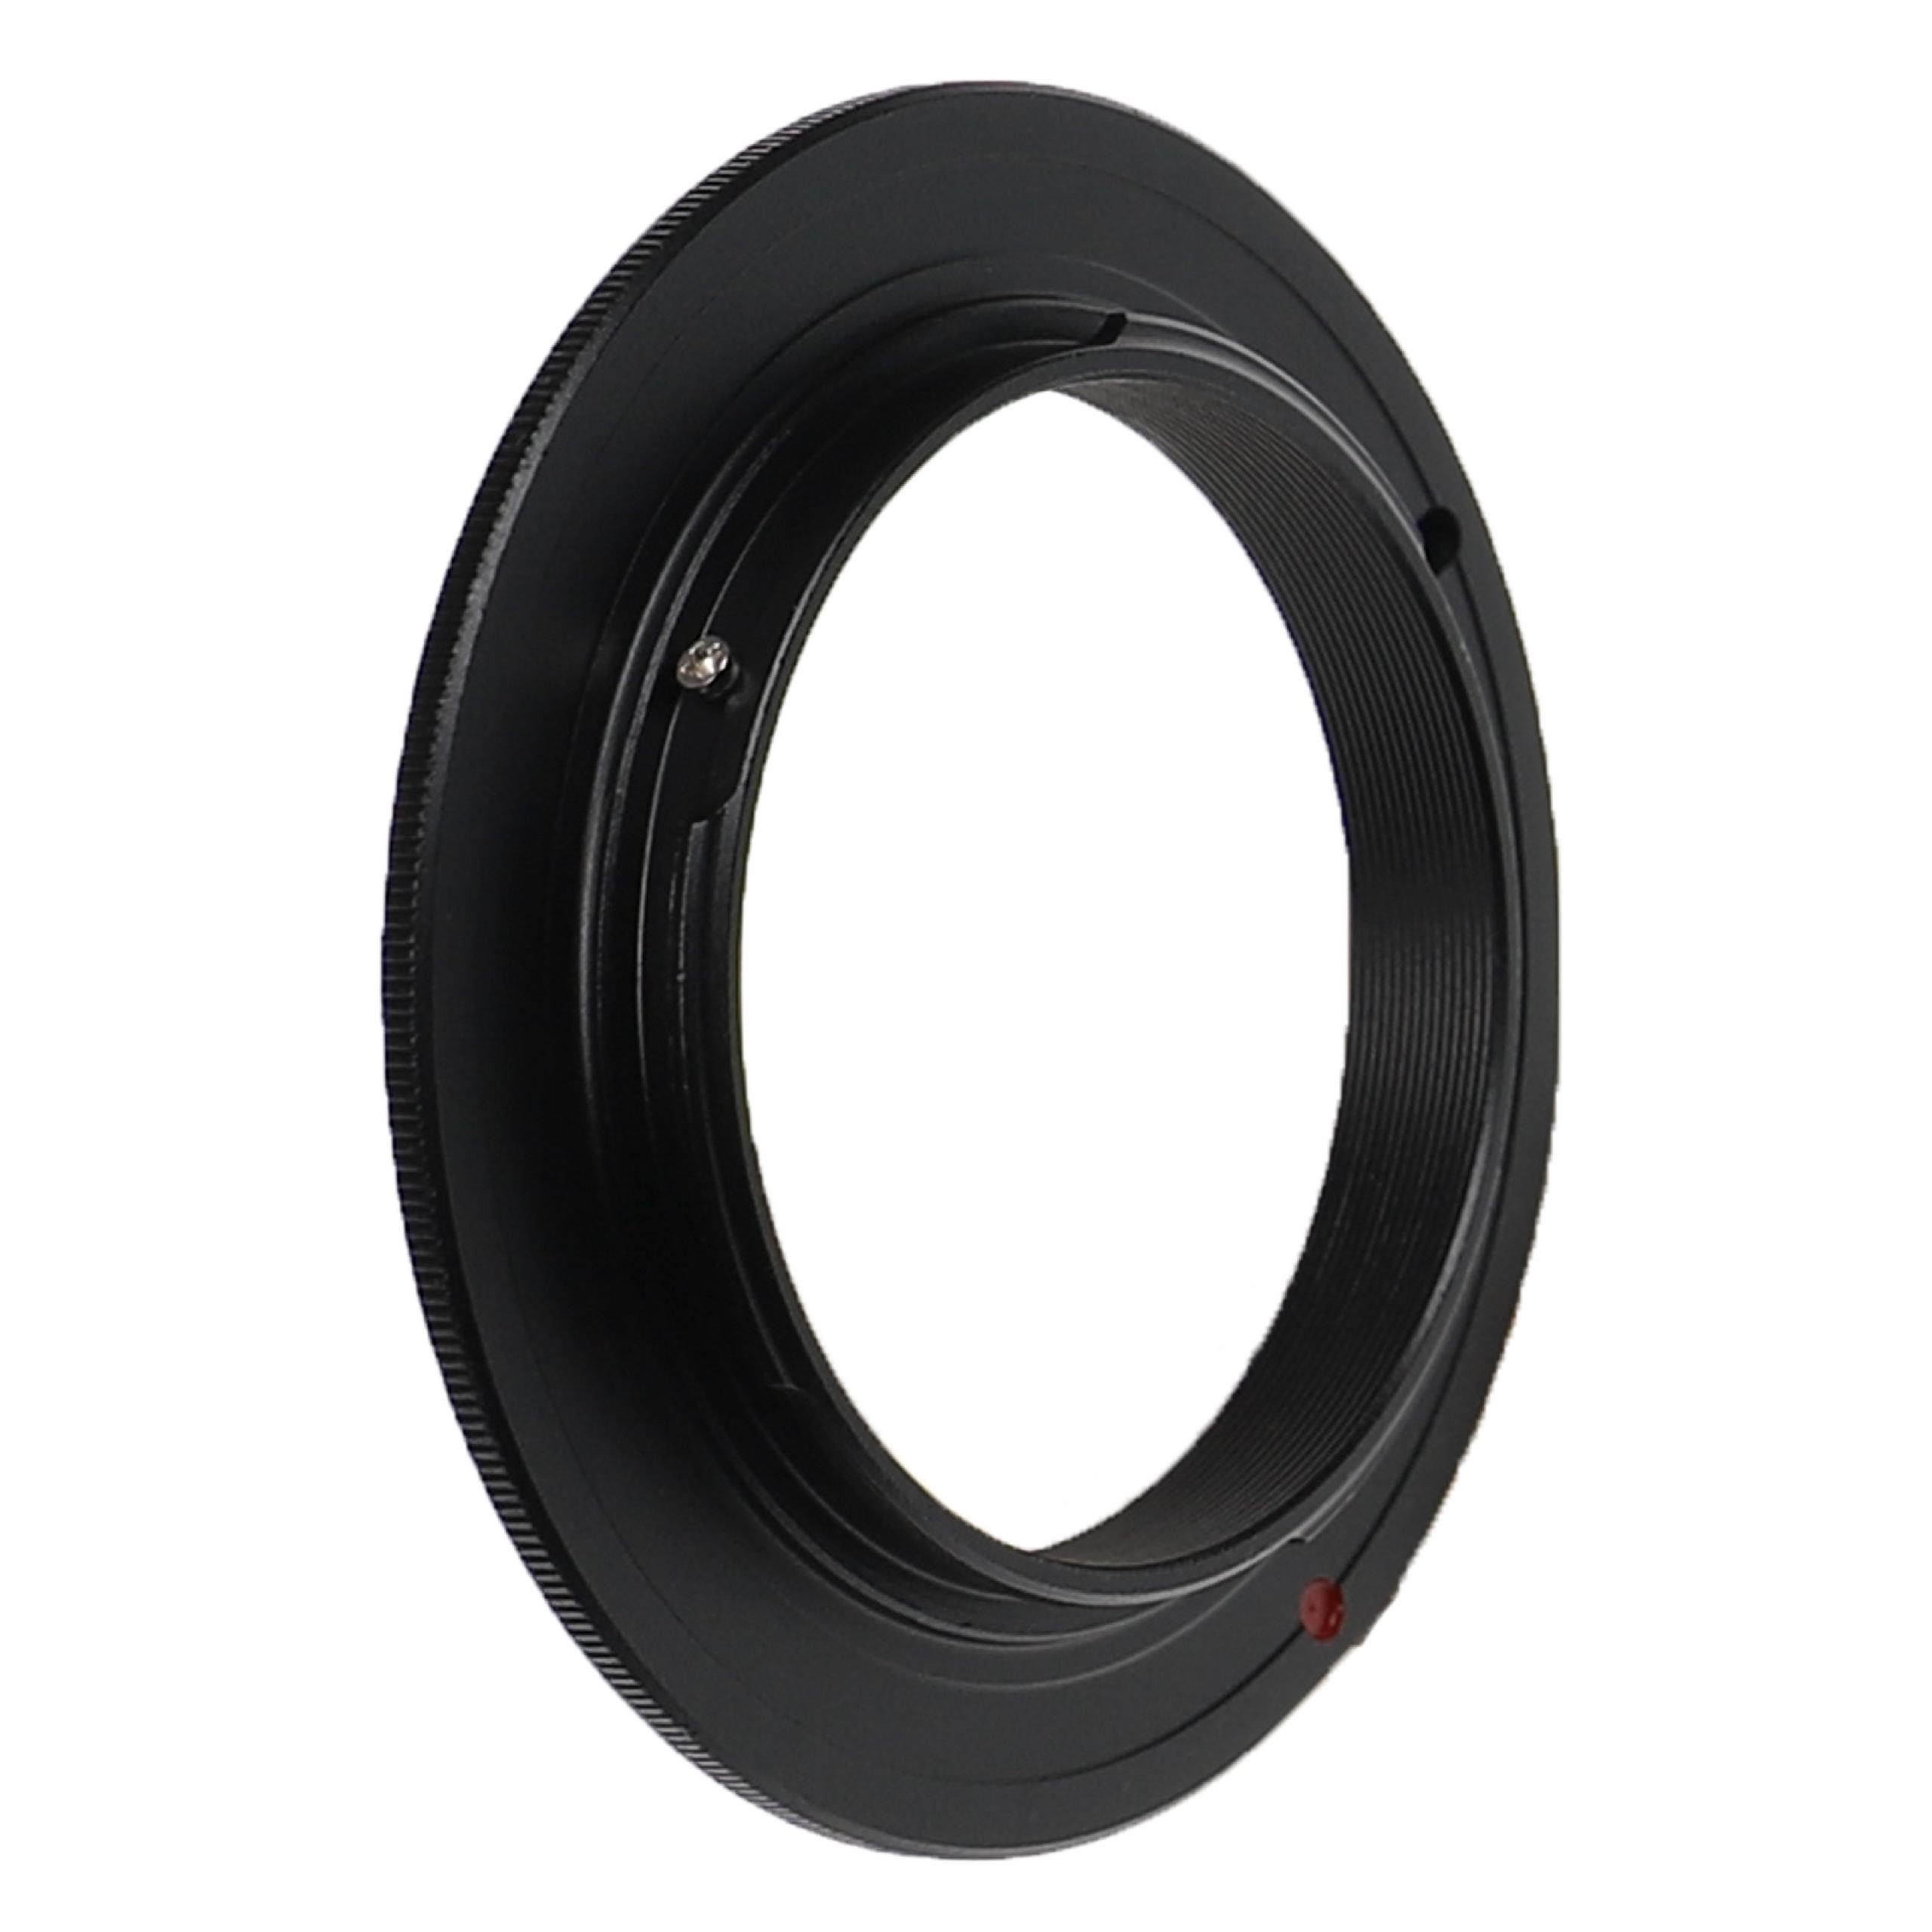 49 mm Retro Adapter suitable for DMC-G1 Panasonic, Olympus DMC-G1 Cameras & Lenses etc. - Retro Ring